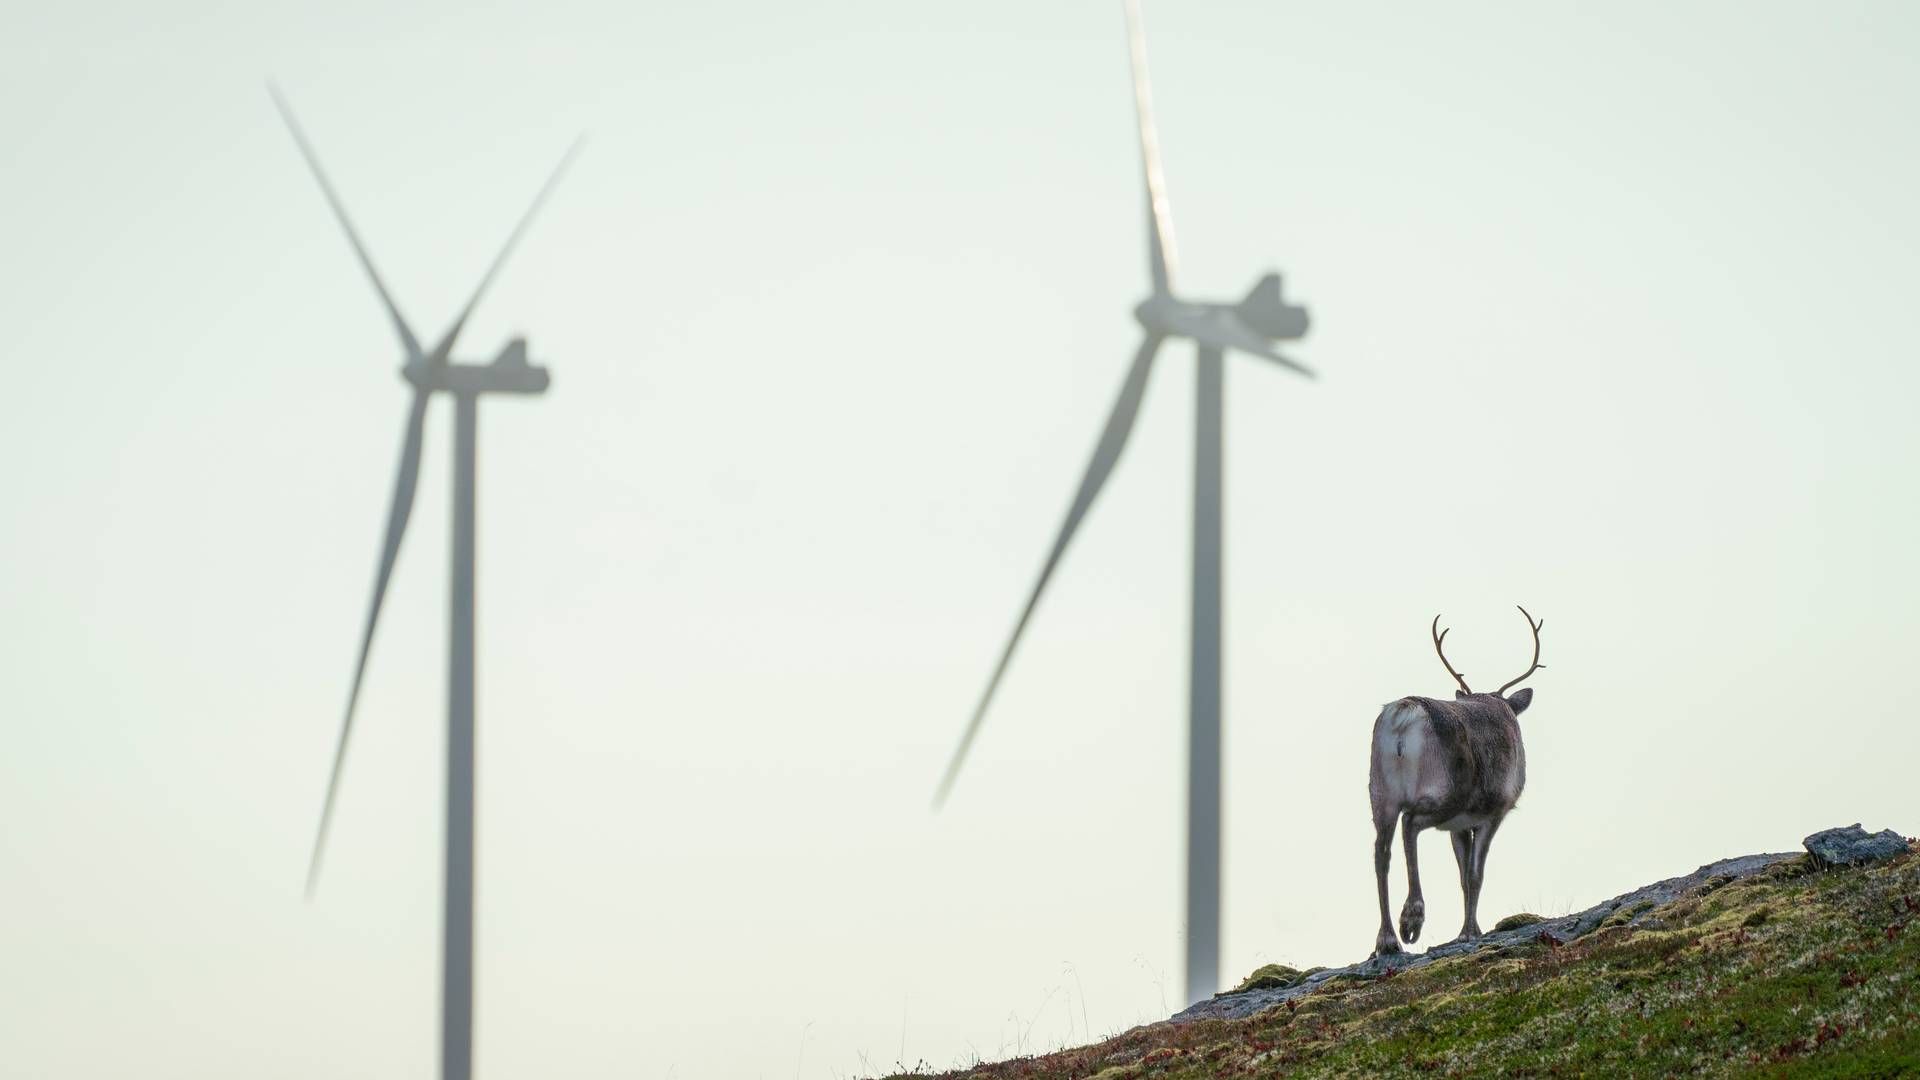 KRITISERER ENERGIKOMMISJONEN: – Mer utbygging av all energi, raskere, vil kunne føre til massiv overkjøring av samiske rettigheter. | Foto: Heiko Junge / NTB